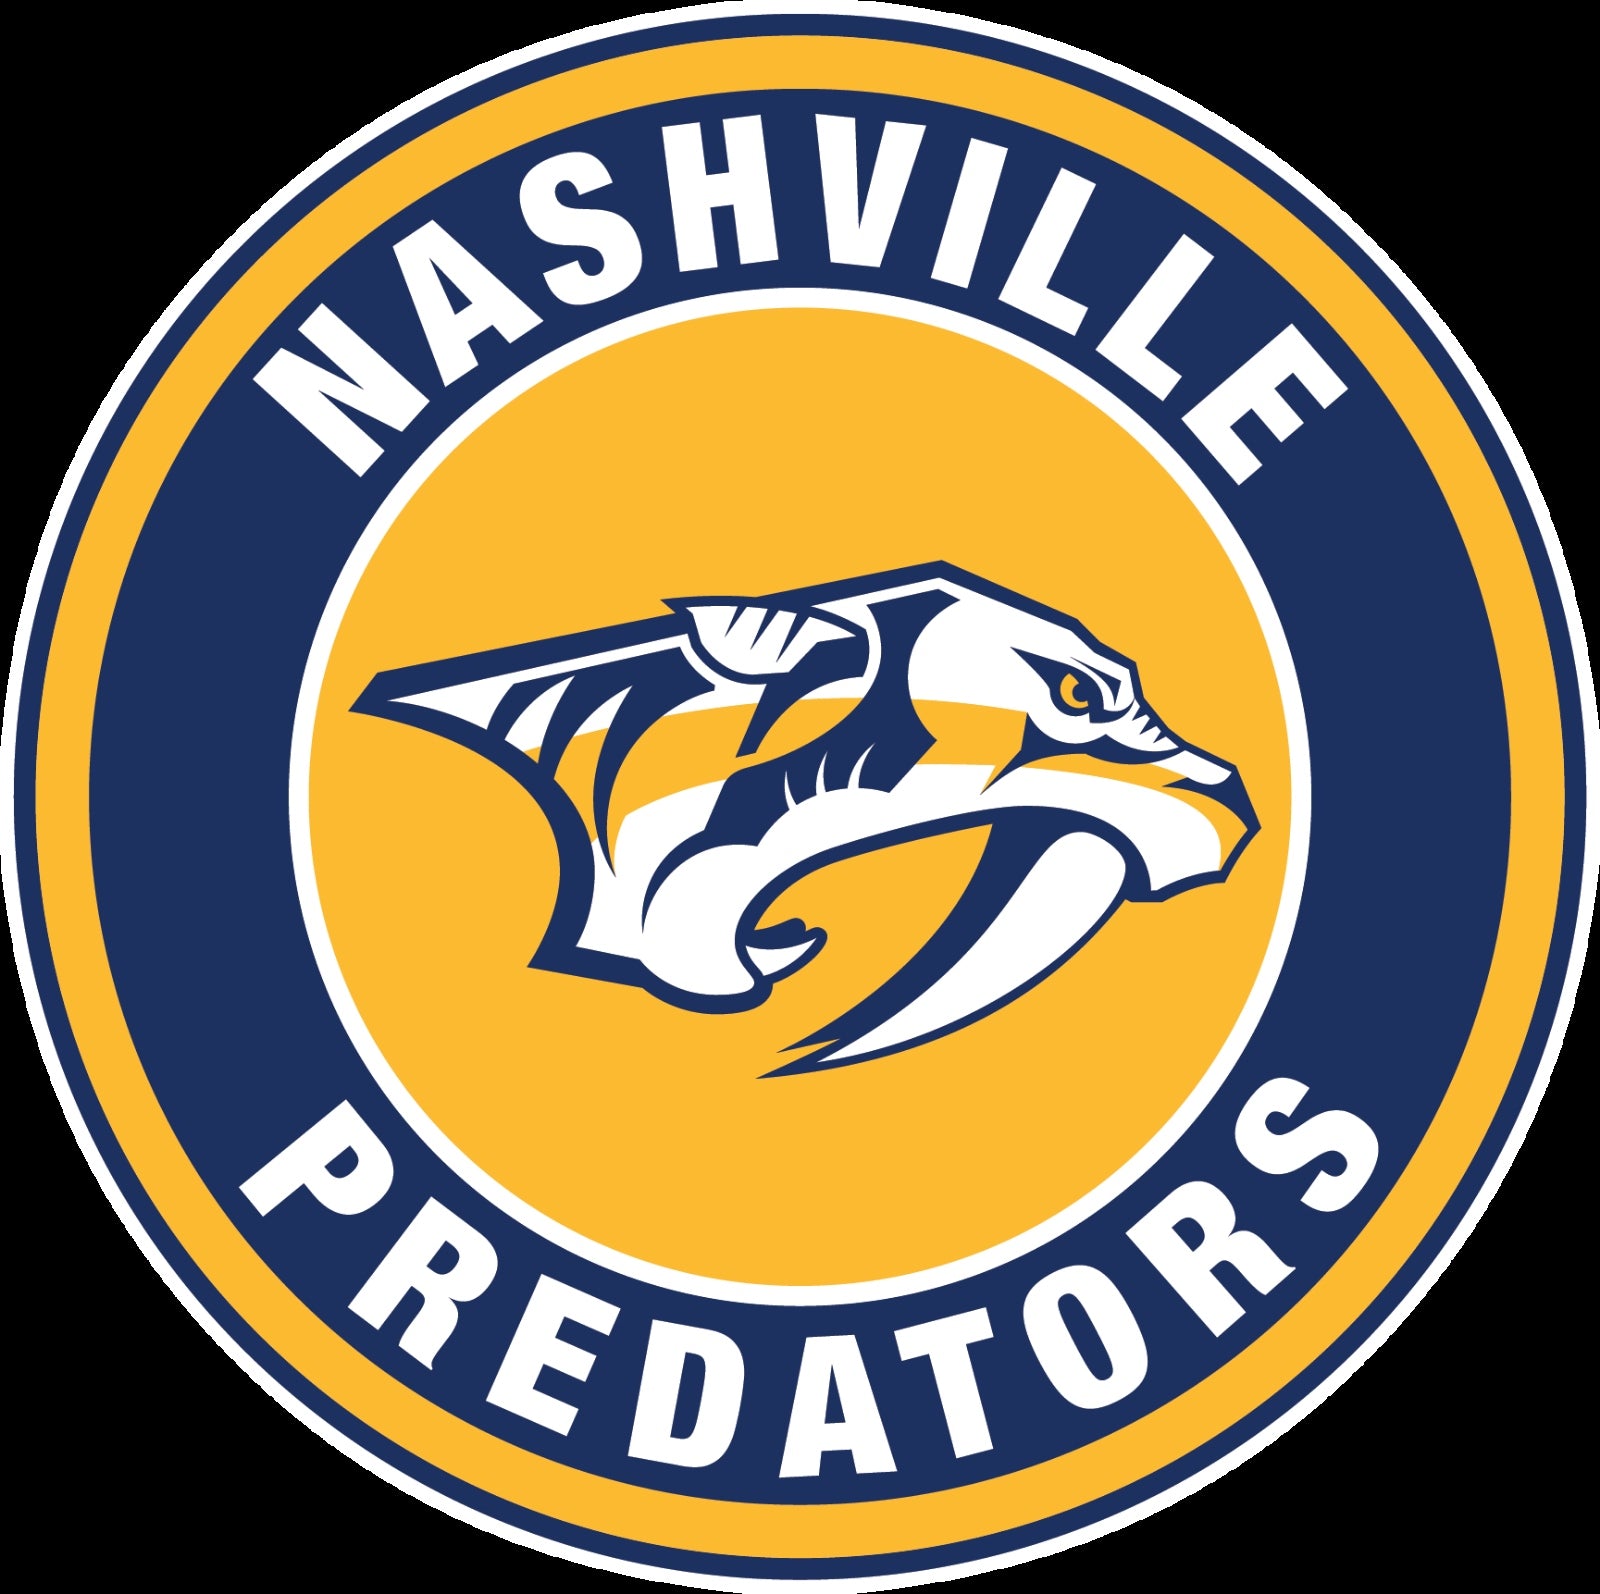 Logos & Jerseys  Nashville Predators